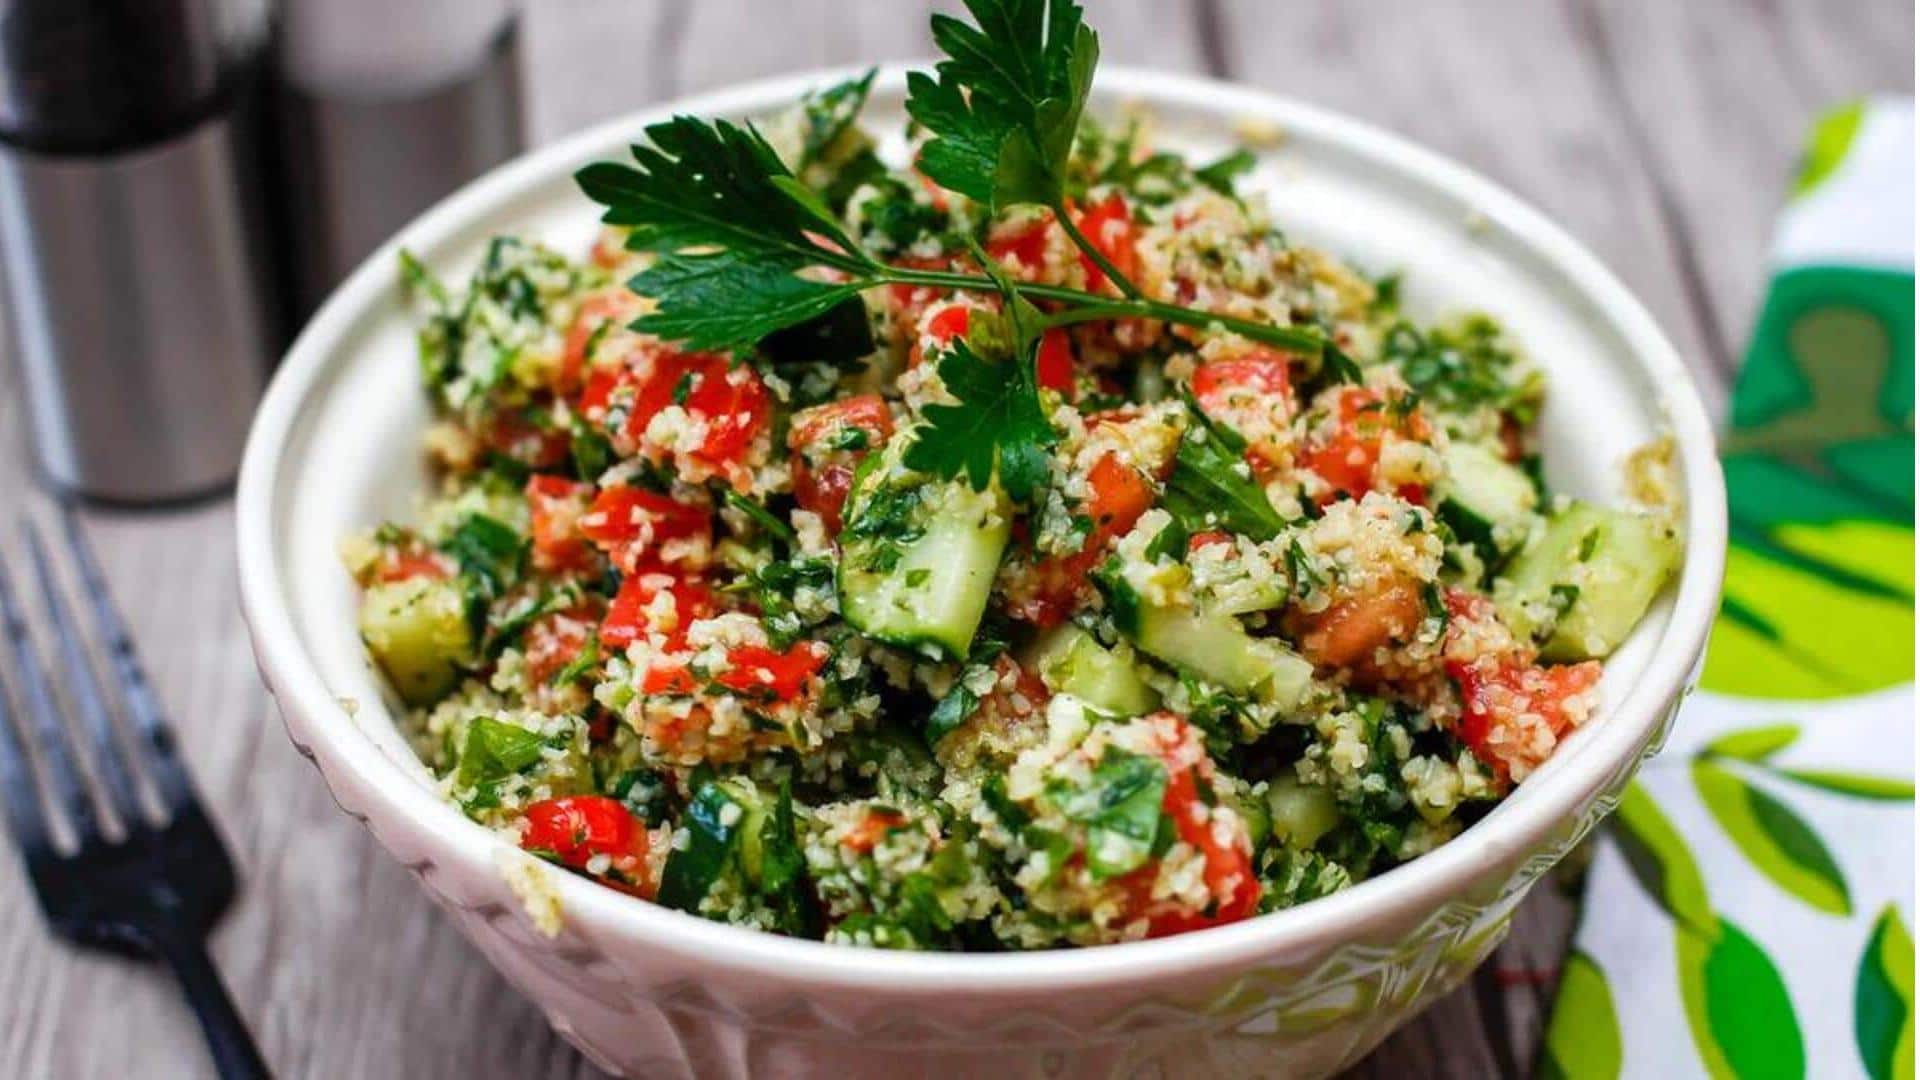 Saatnya berbagi resep! Buatlah salad tabbouleh tradisional ini